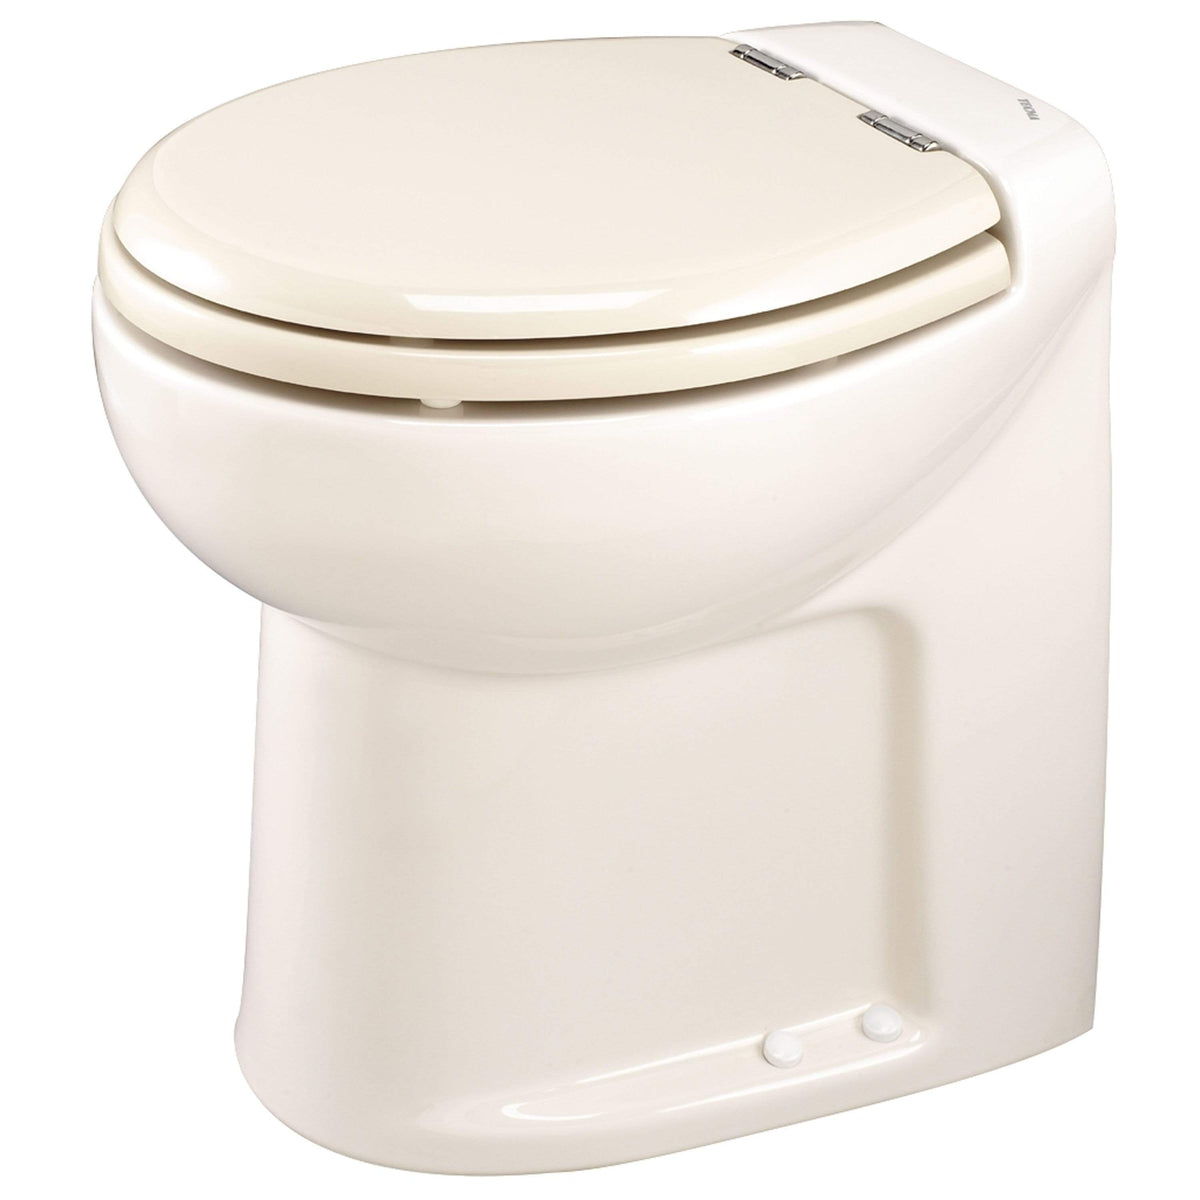 Thetford Not Qualified for Free Shipping Thetford Tecma Silence 2 Mode 12v RV Toilet White #38097